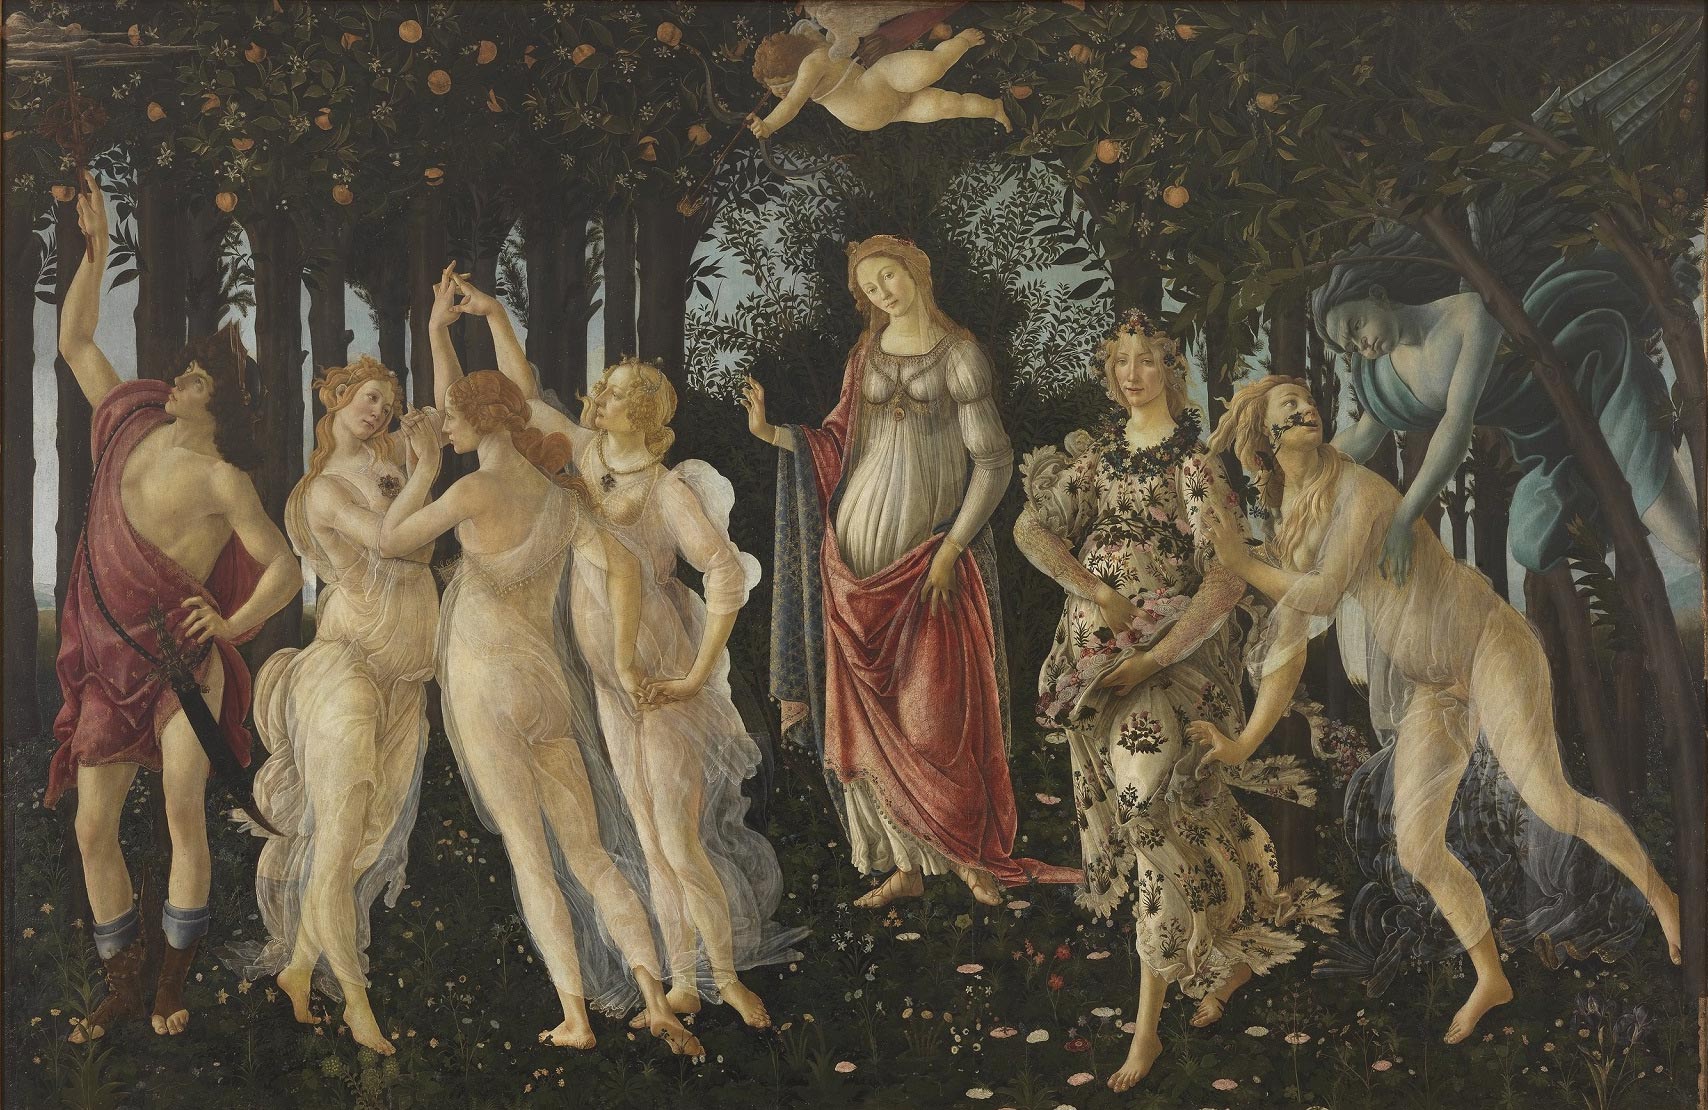 Sandro Botticelli, Primavera (c. 1480; tempera grassa on panel, 207 x 319 cm; Florence, Gallerie degli Uffizi, inv. 1890 no. 8360)